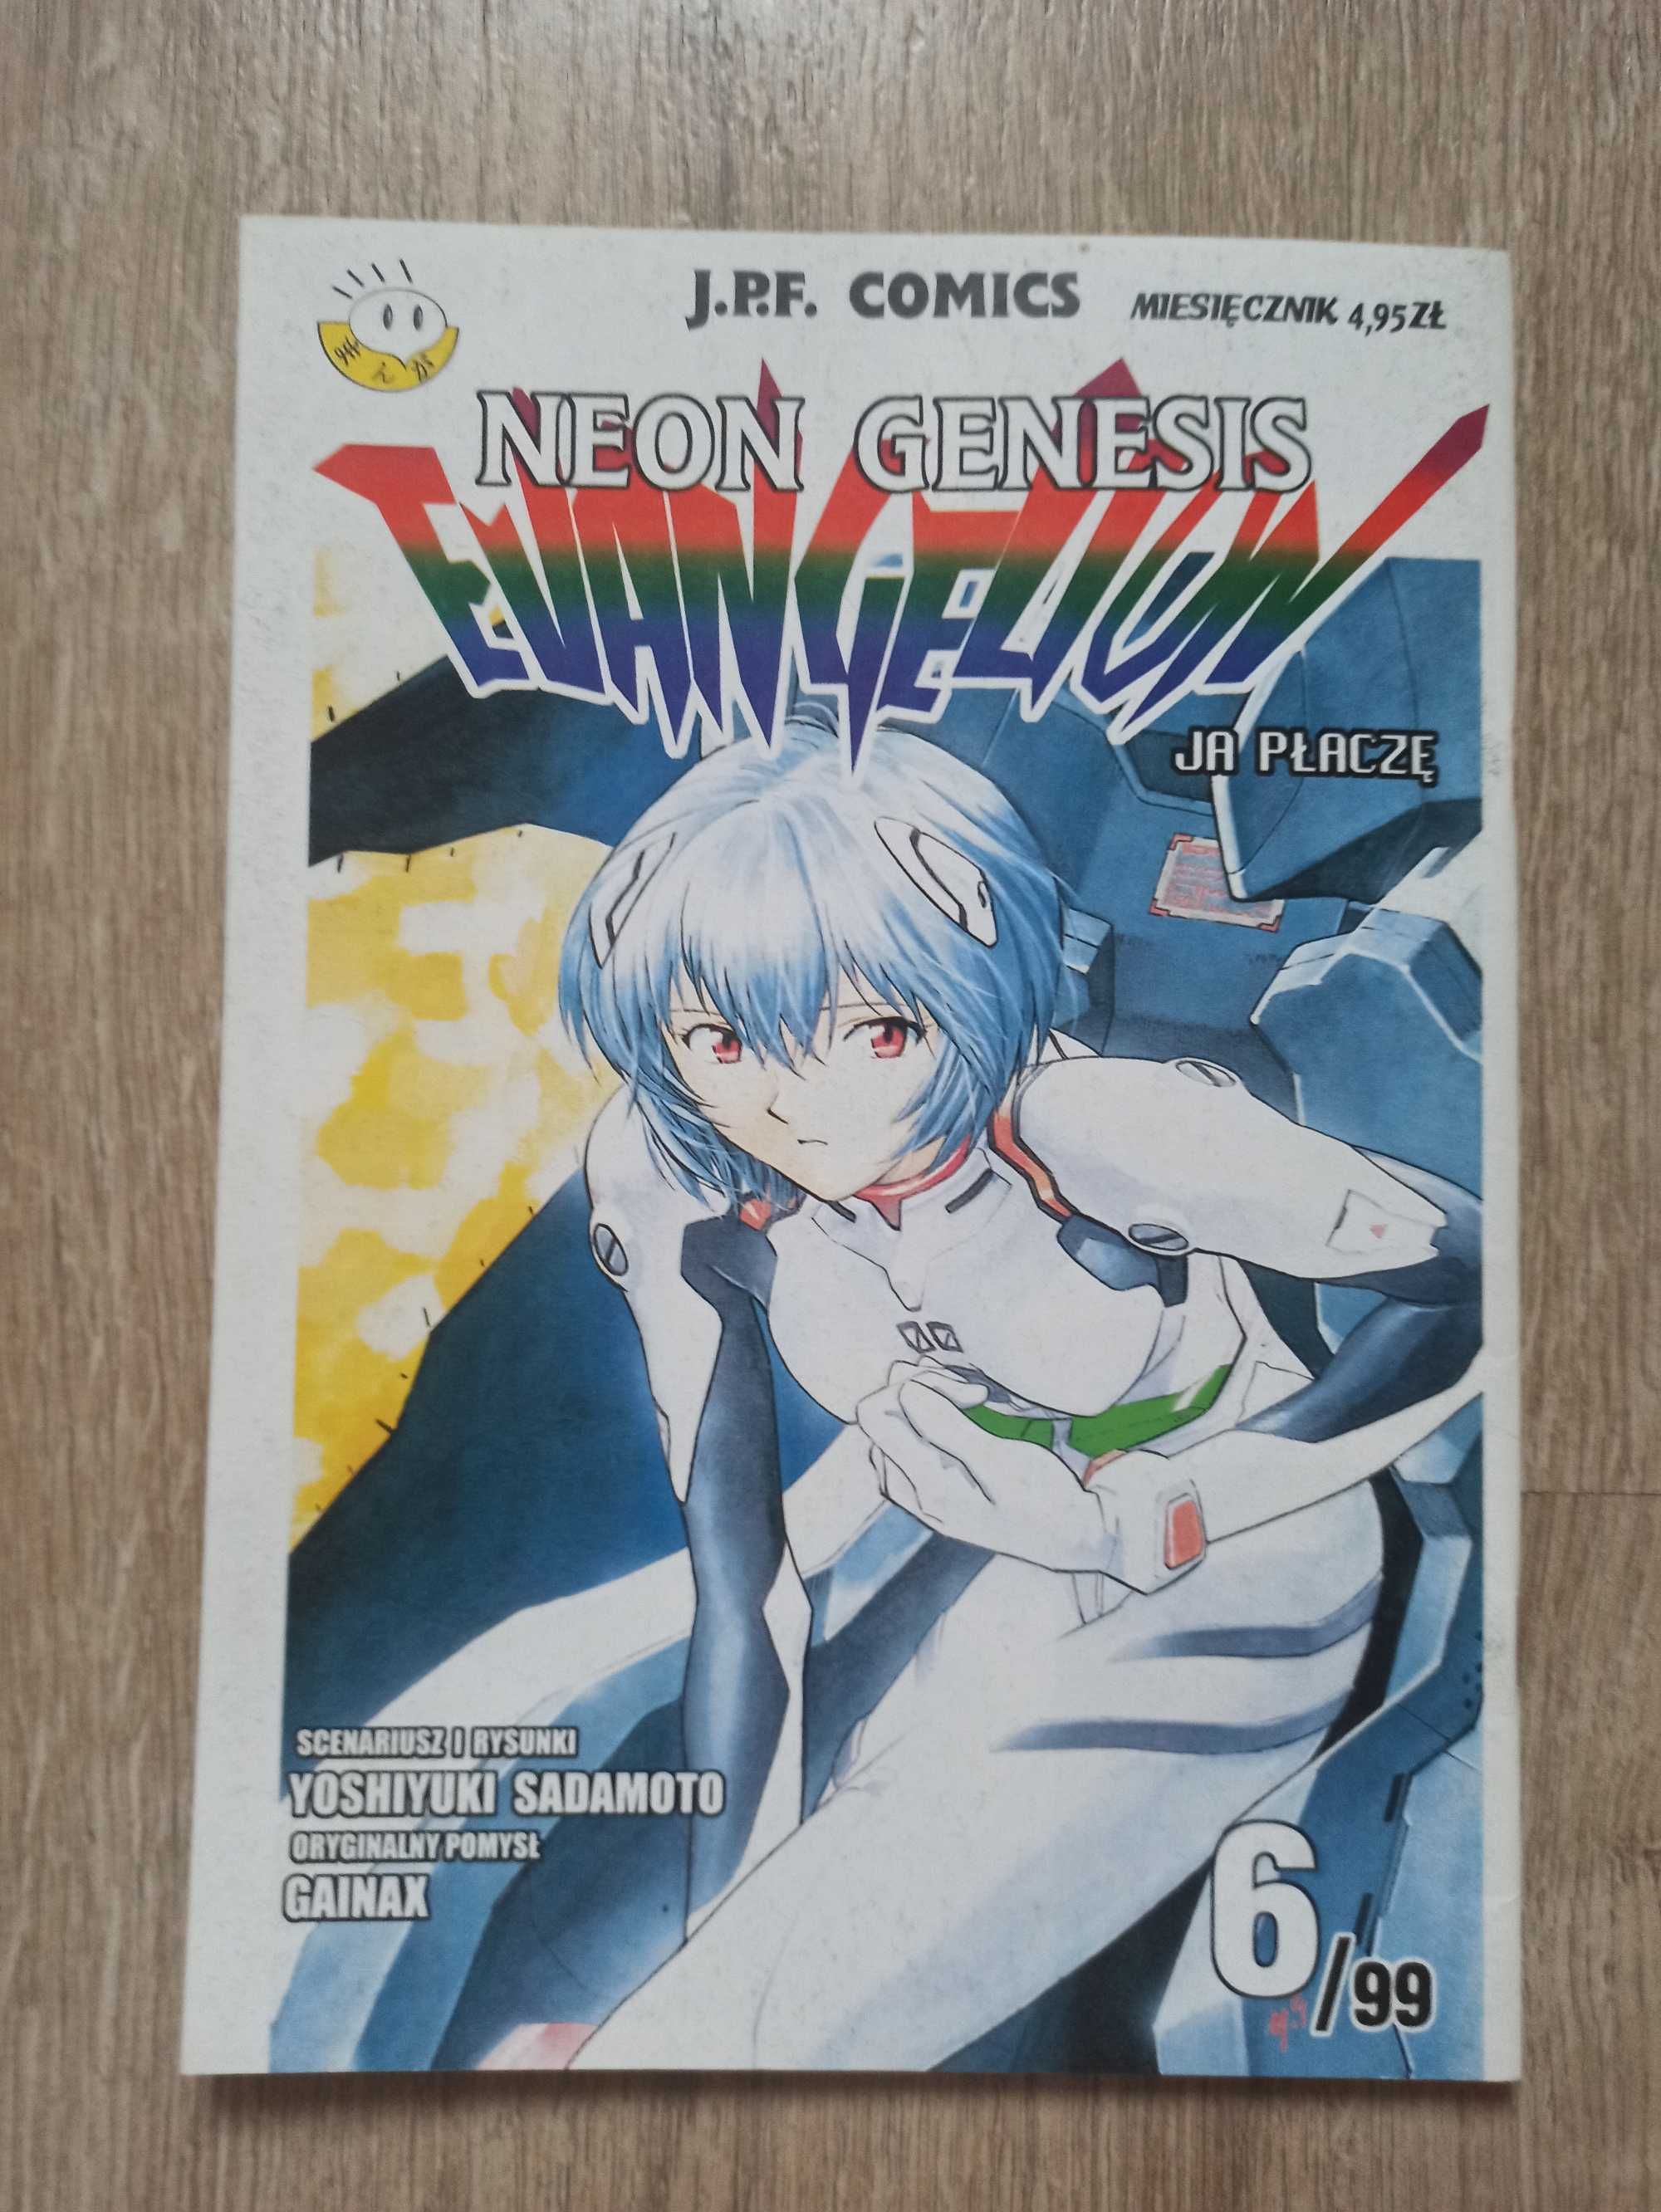 Yoshiyuki Sadamoto - Neon Genesis Evangelion 6/99